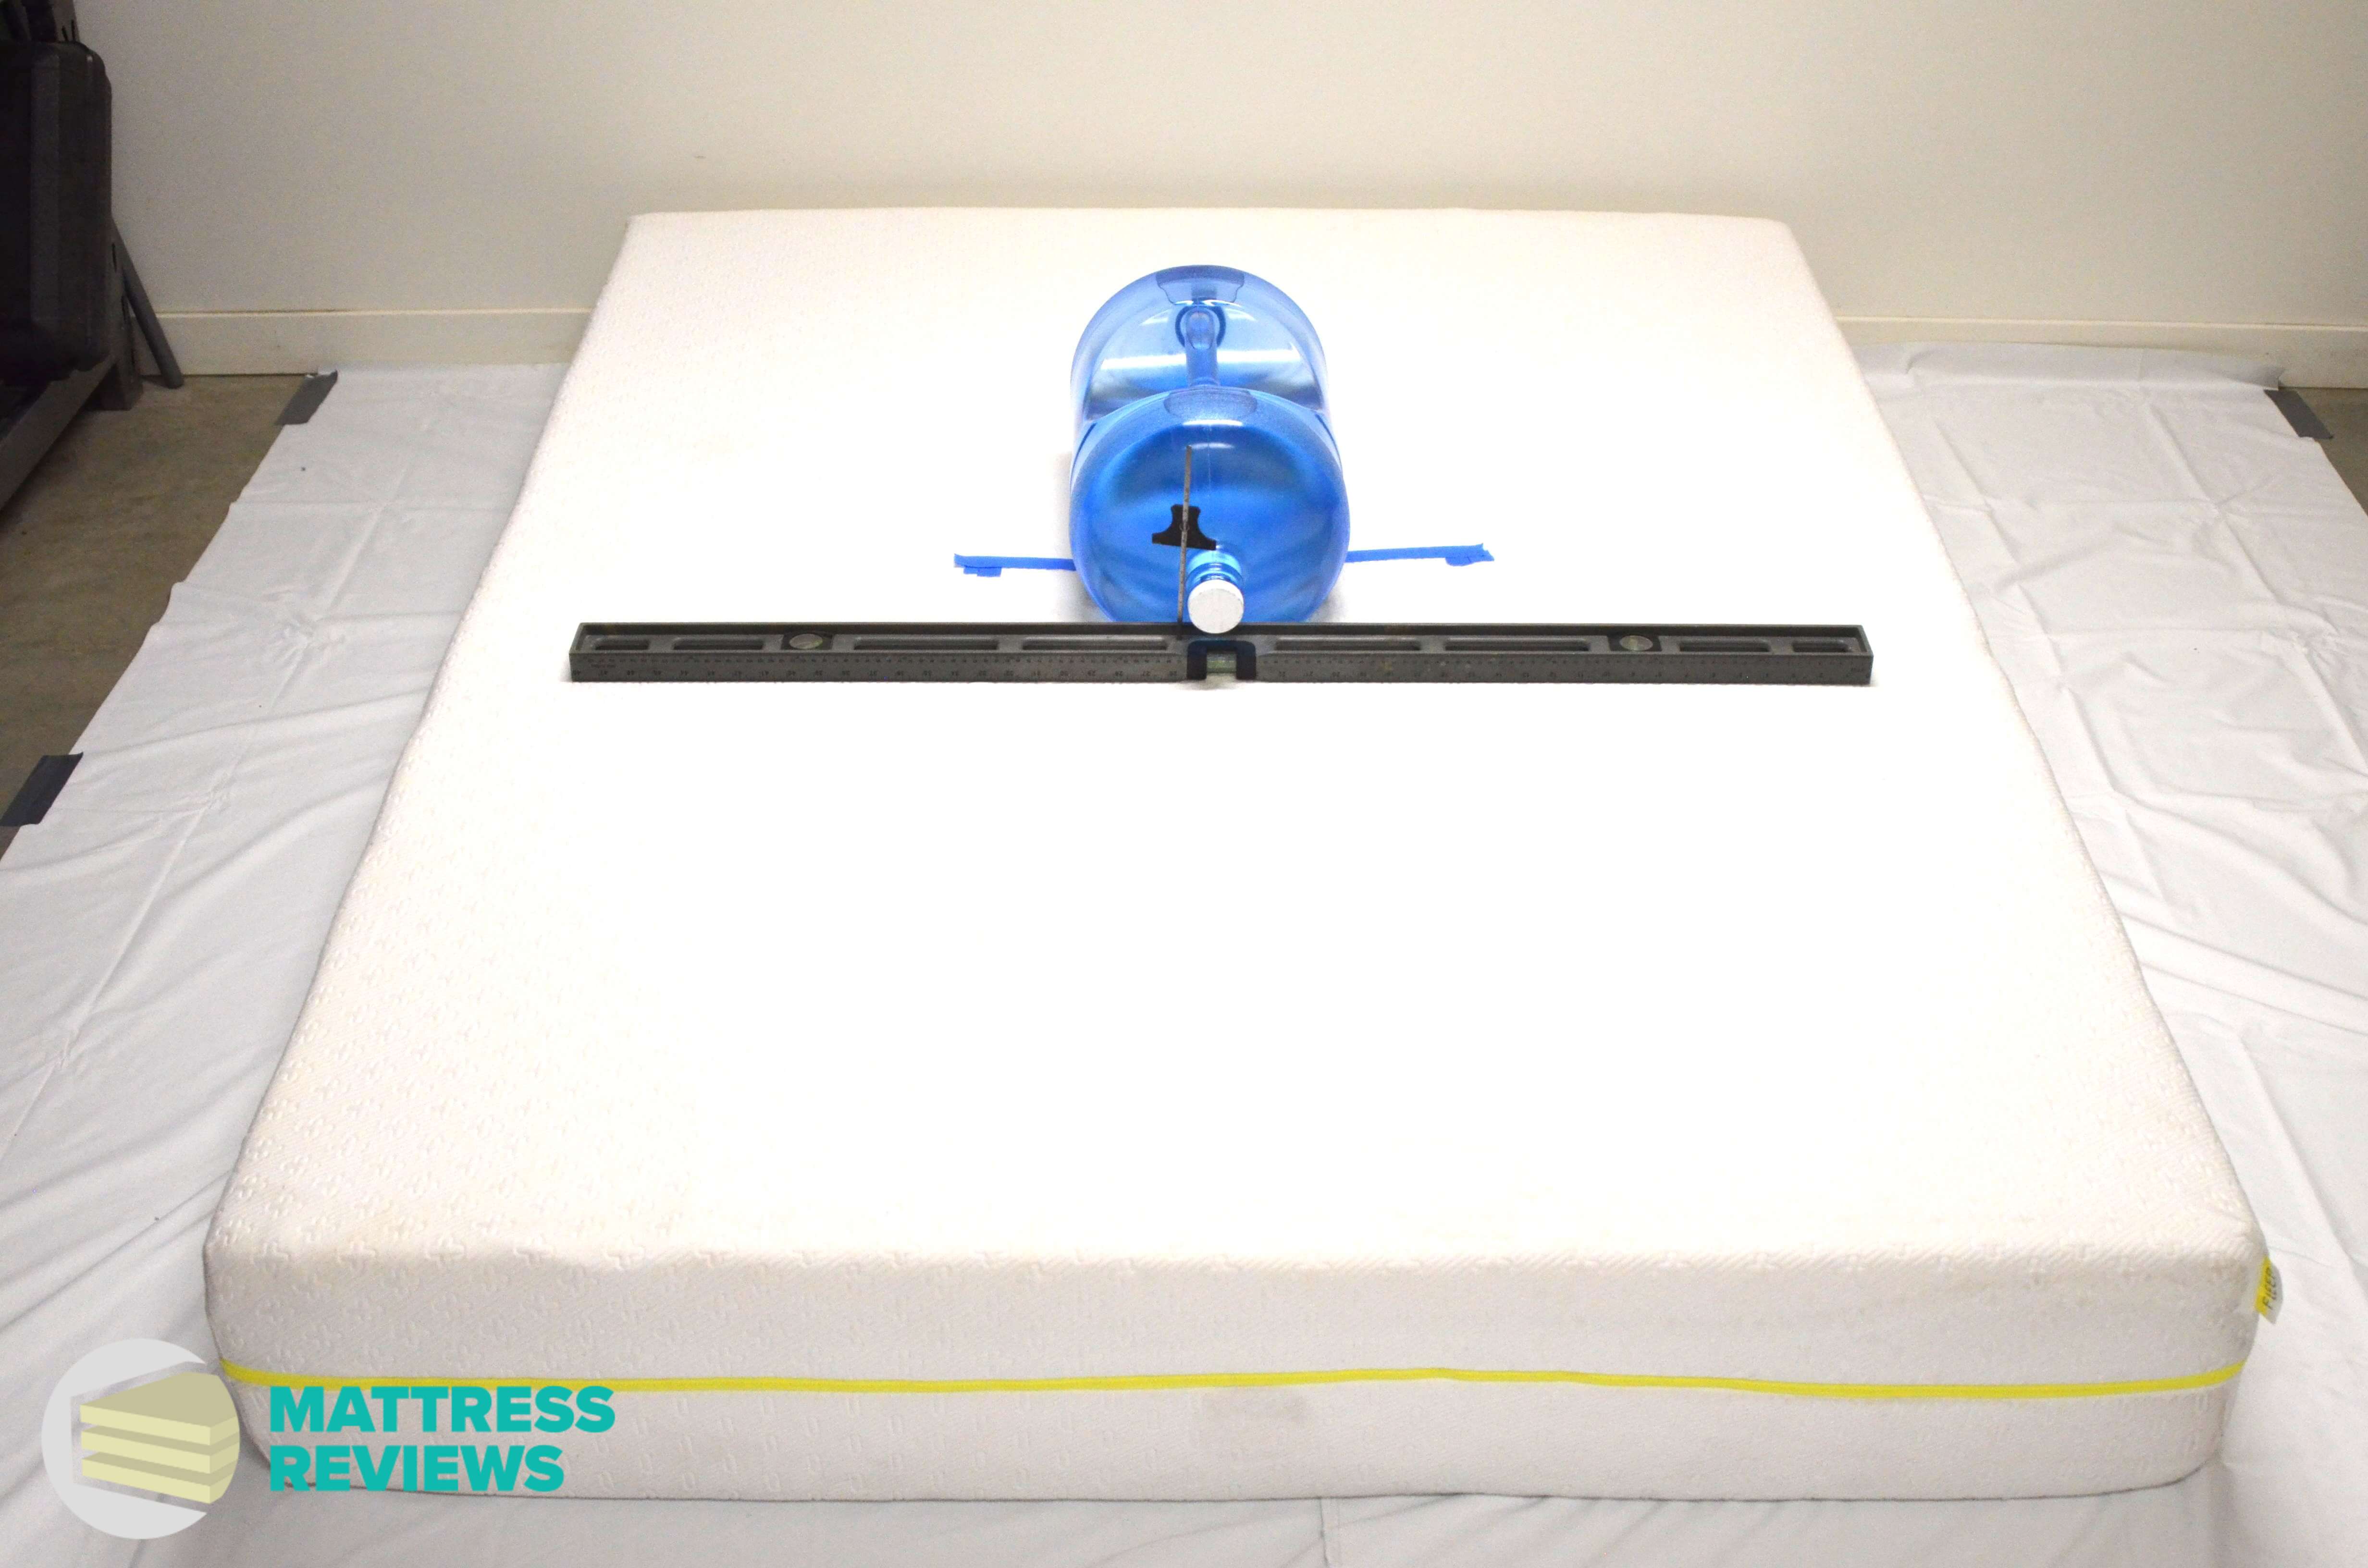 Image of the Fleep Firm mattress firmness test.